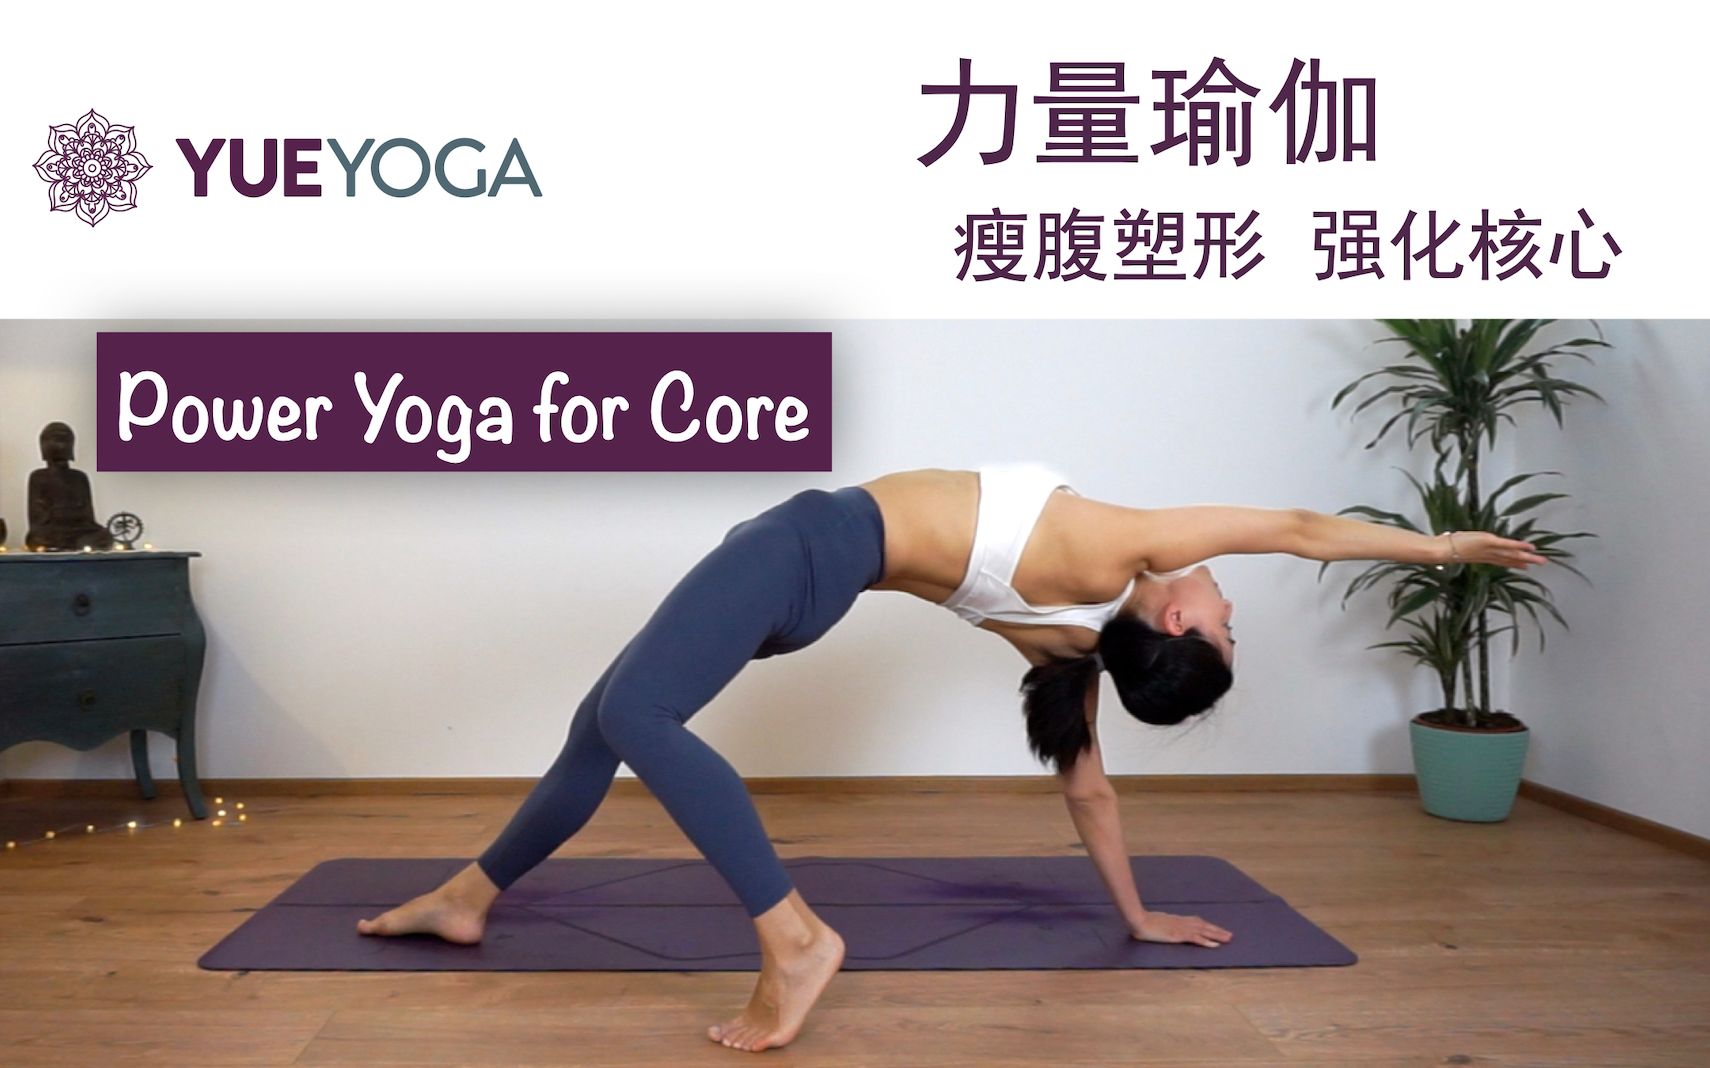 30分钟核心力量瑜伽 建立稳定核心 重塑腹部线条 （中级难度）30min Power Yoga for core | Yue Yoga